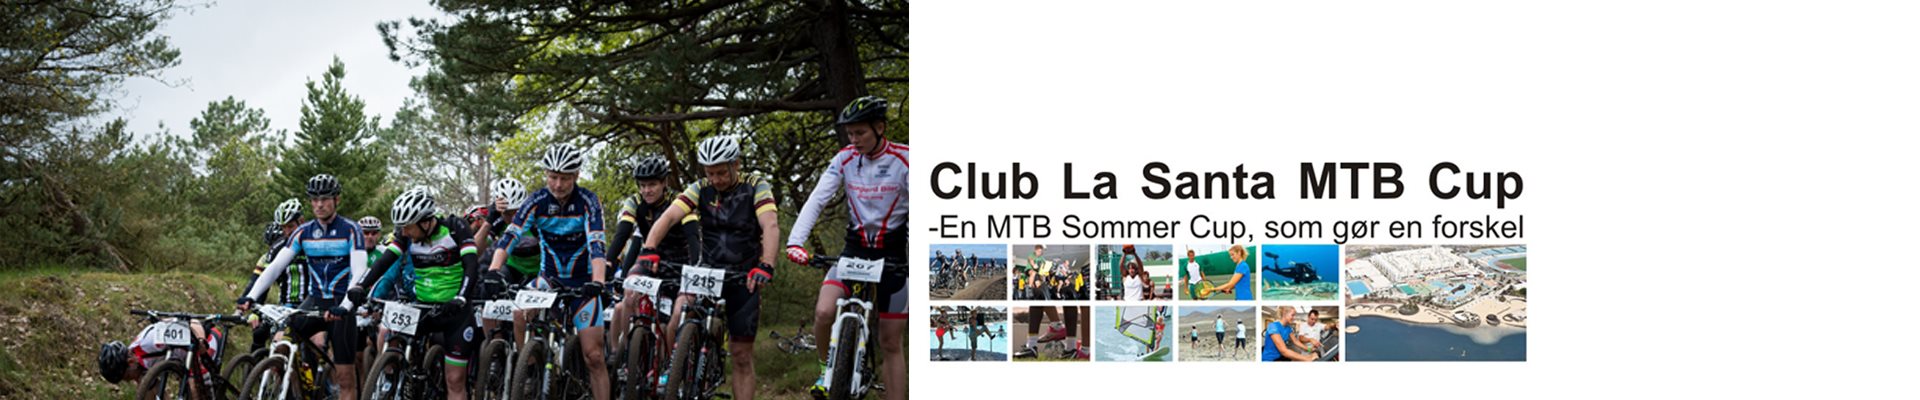 CLUB LA SANTA MTB CUP '22 - #7 Mentor IT MTB, Esbjerg